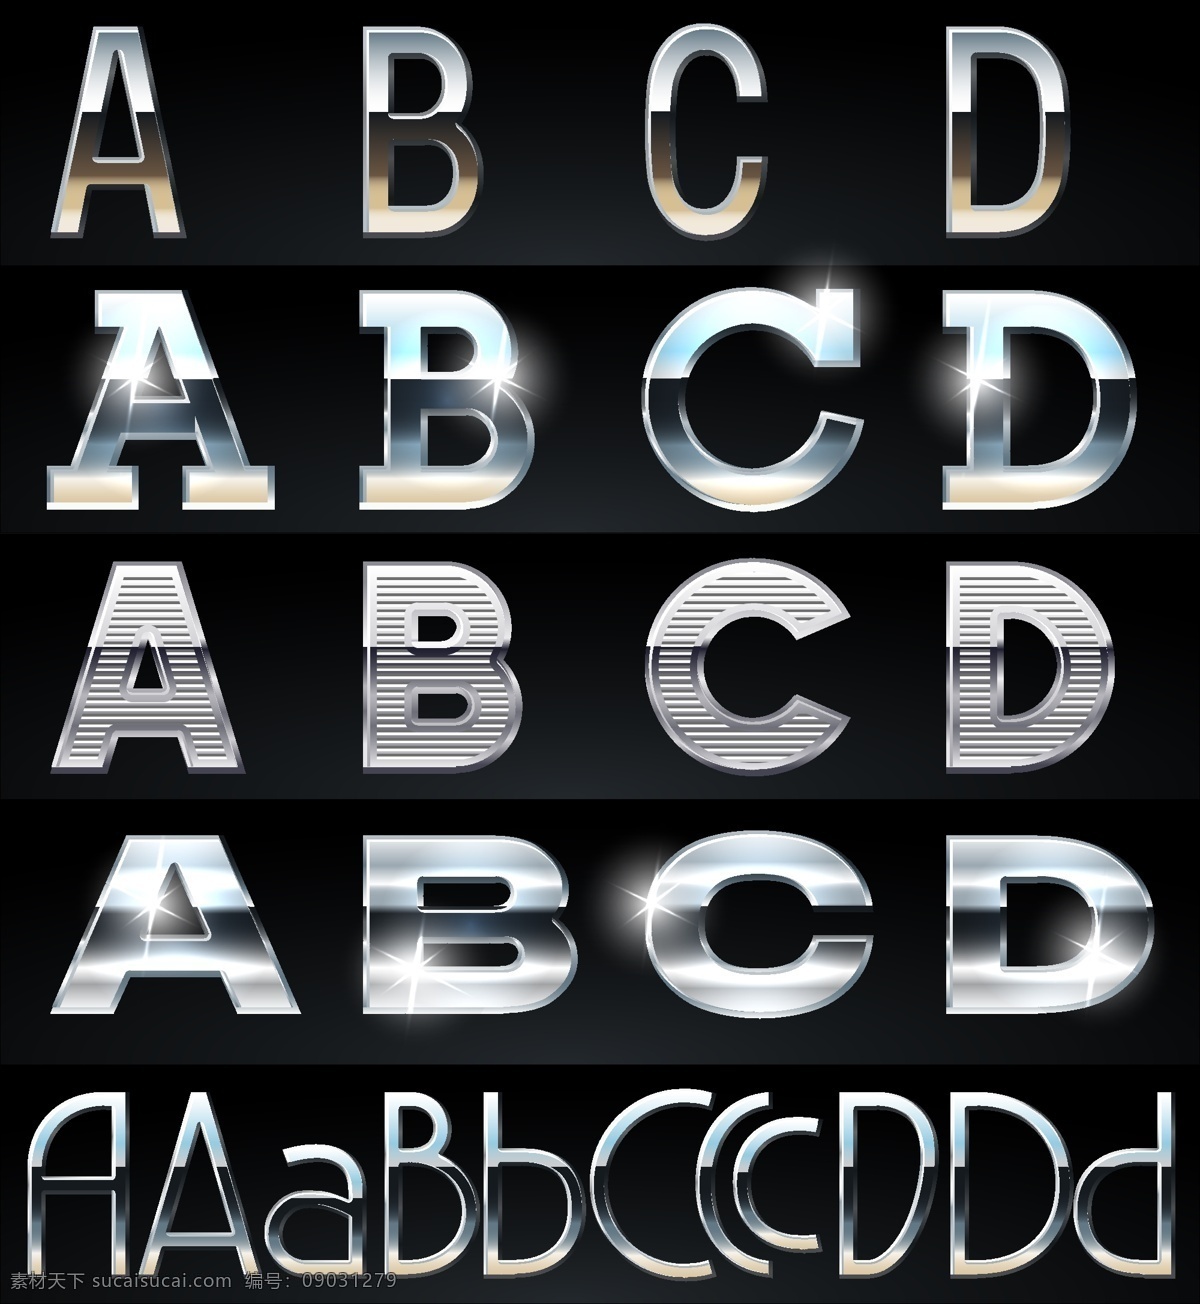 金属 质感 样式 字体 字体设计 抽象 图形 创意 艺术 设计素材 矢量 字体样式 金属样式 字母设计 高光 流行元素 底纹边框 矢量素材 黑色